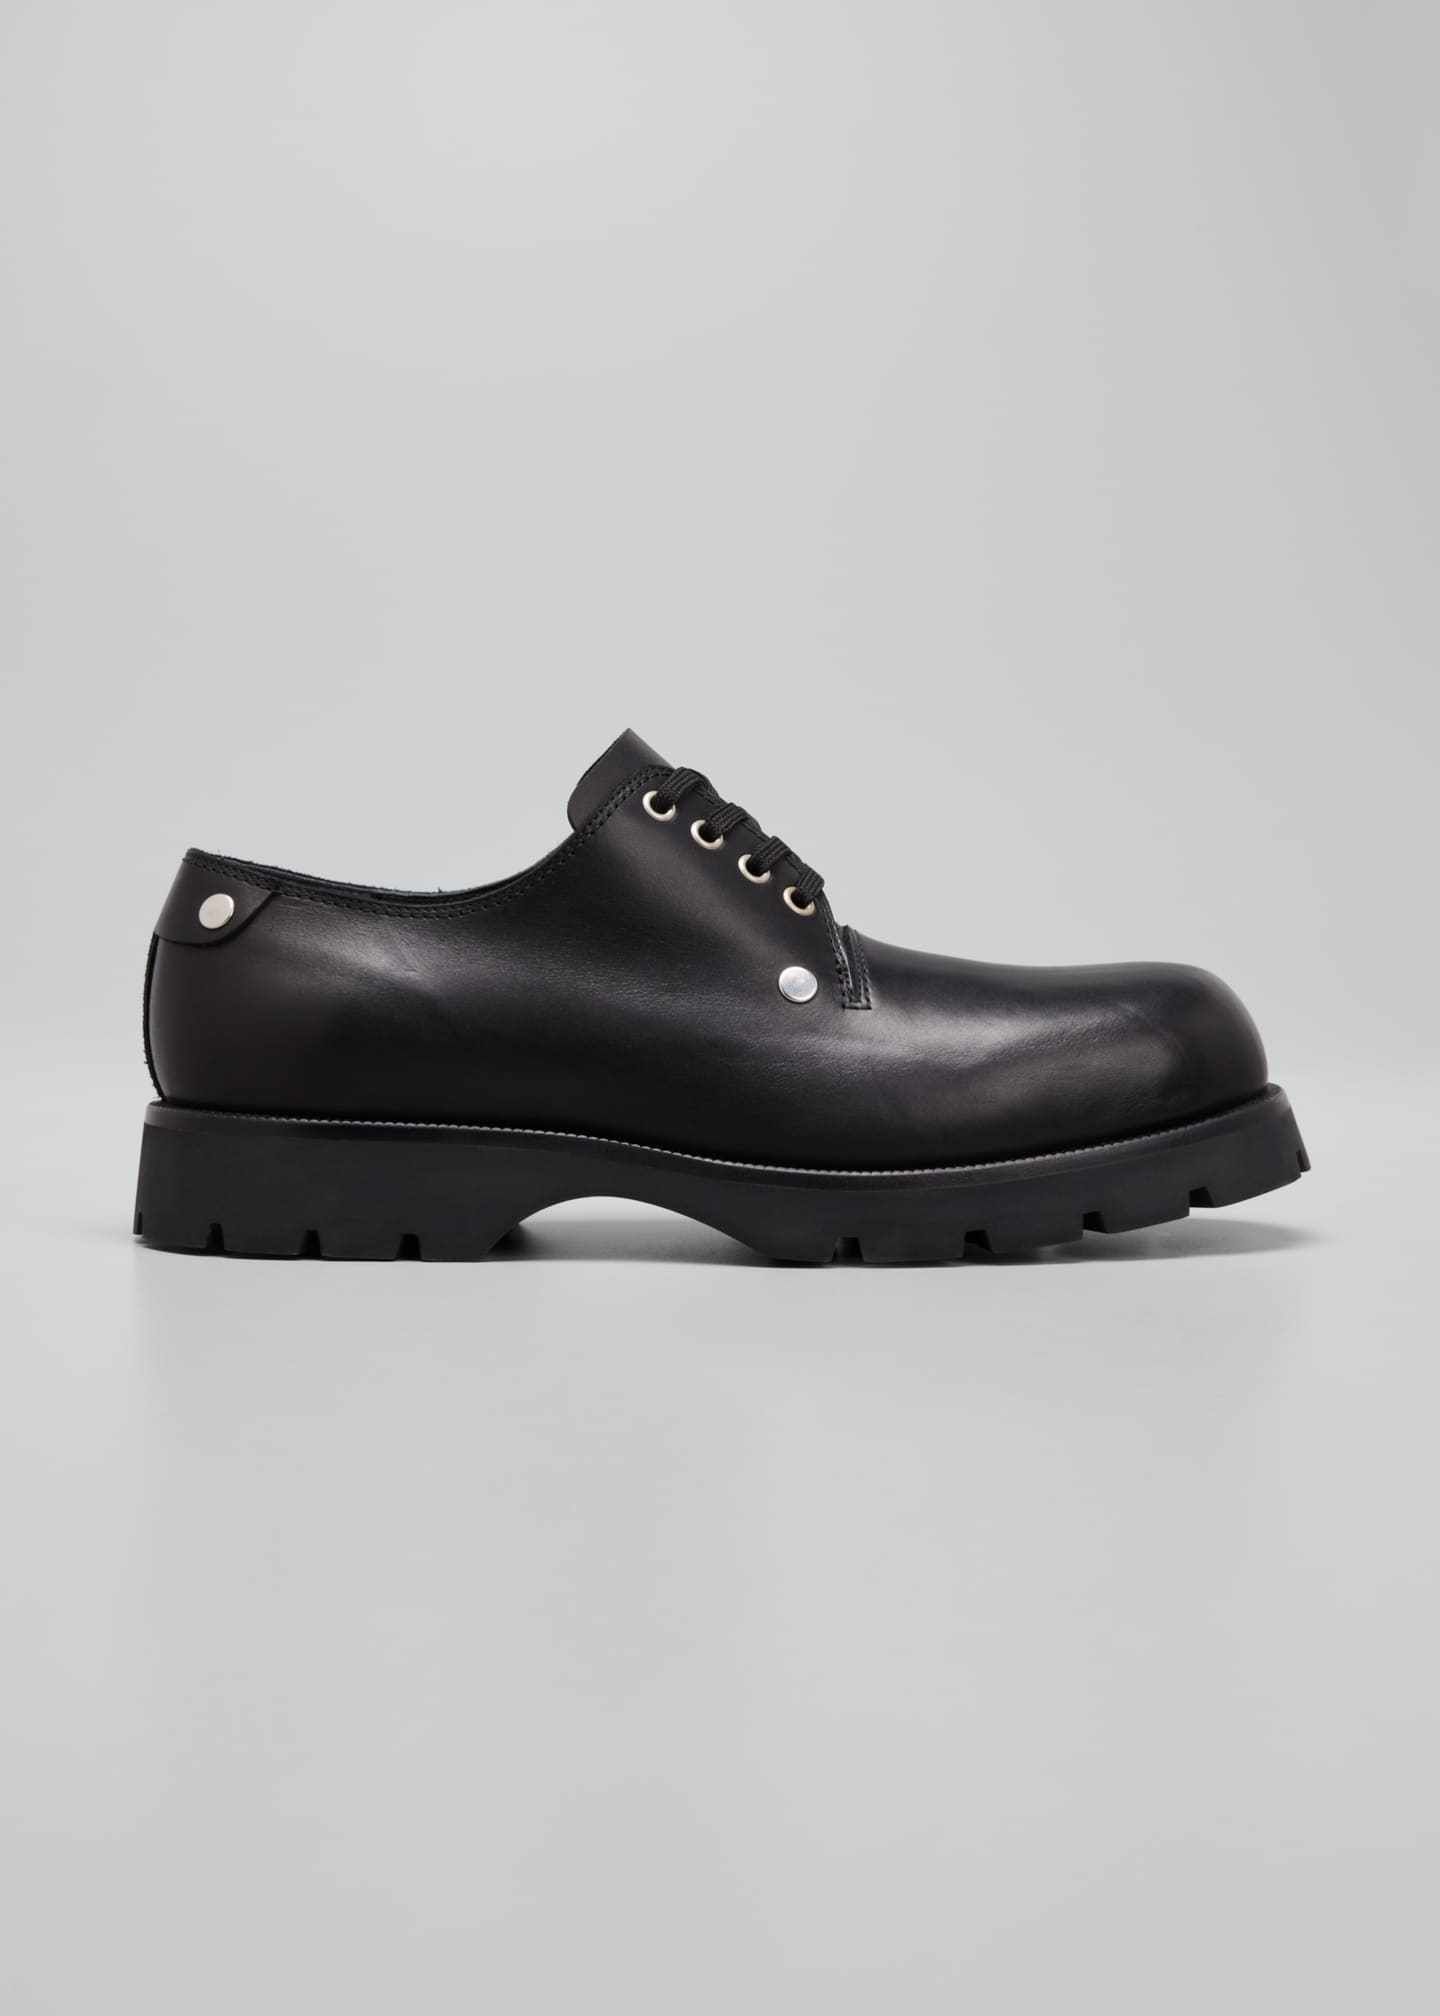 Jil Sander Men's Lug-Sole Calf Leather Derby Shoes